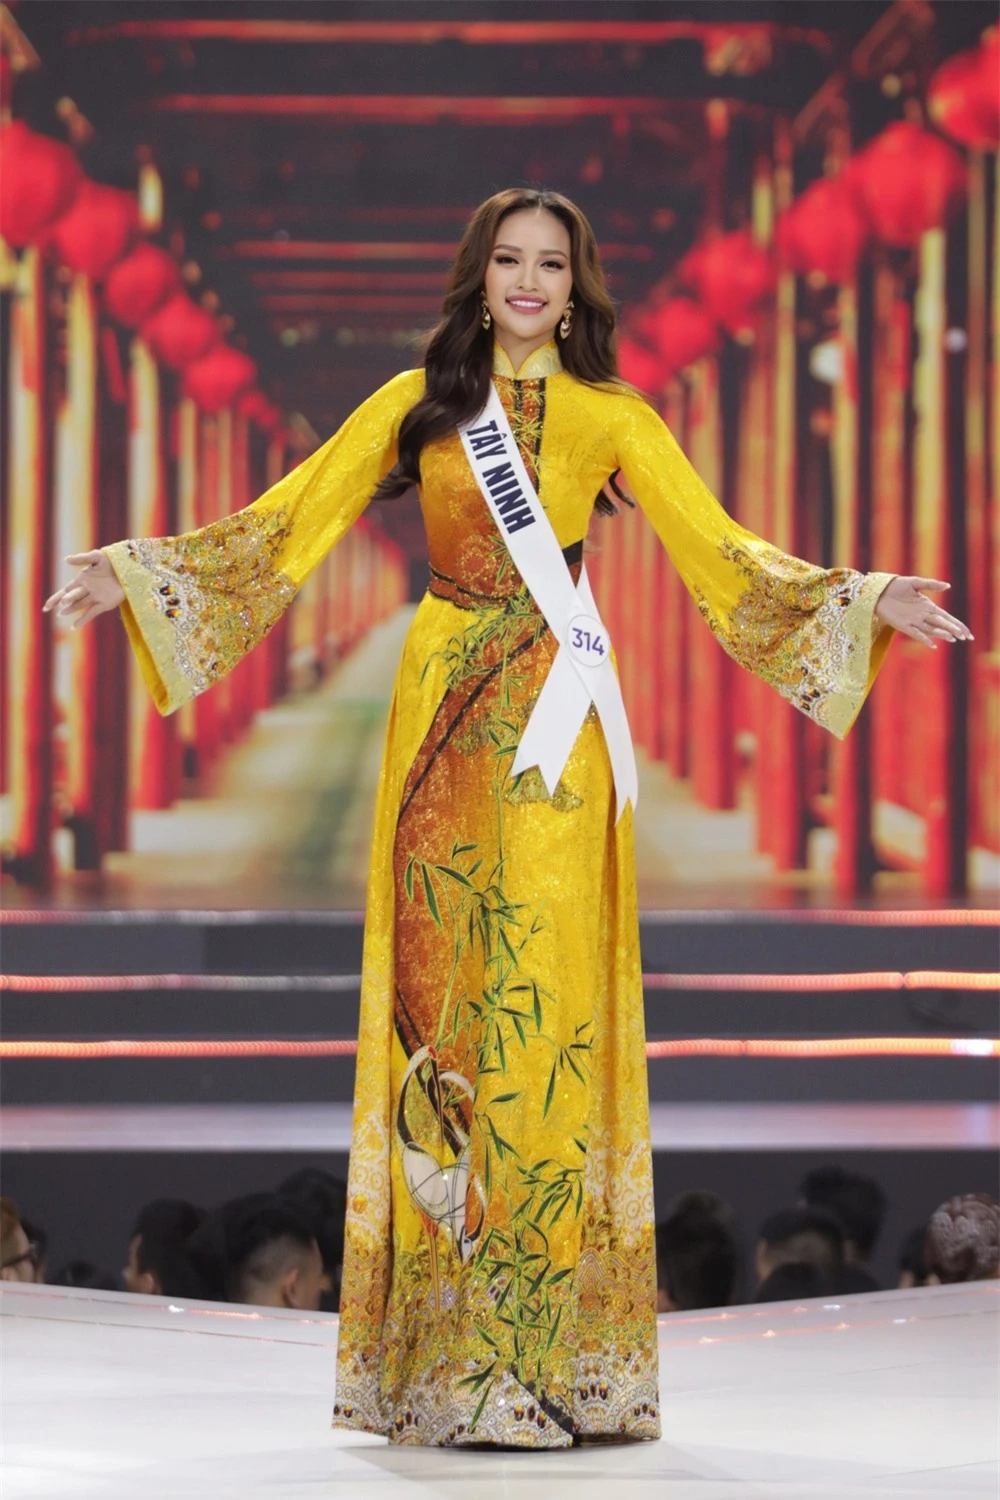 Bán kết Hoa hậu Hoàn vũ Việt Nam 2022: Loạt ứng viên cùng khoe vẻ nóng bỏng - Ảnh 4.